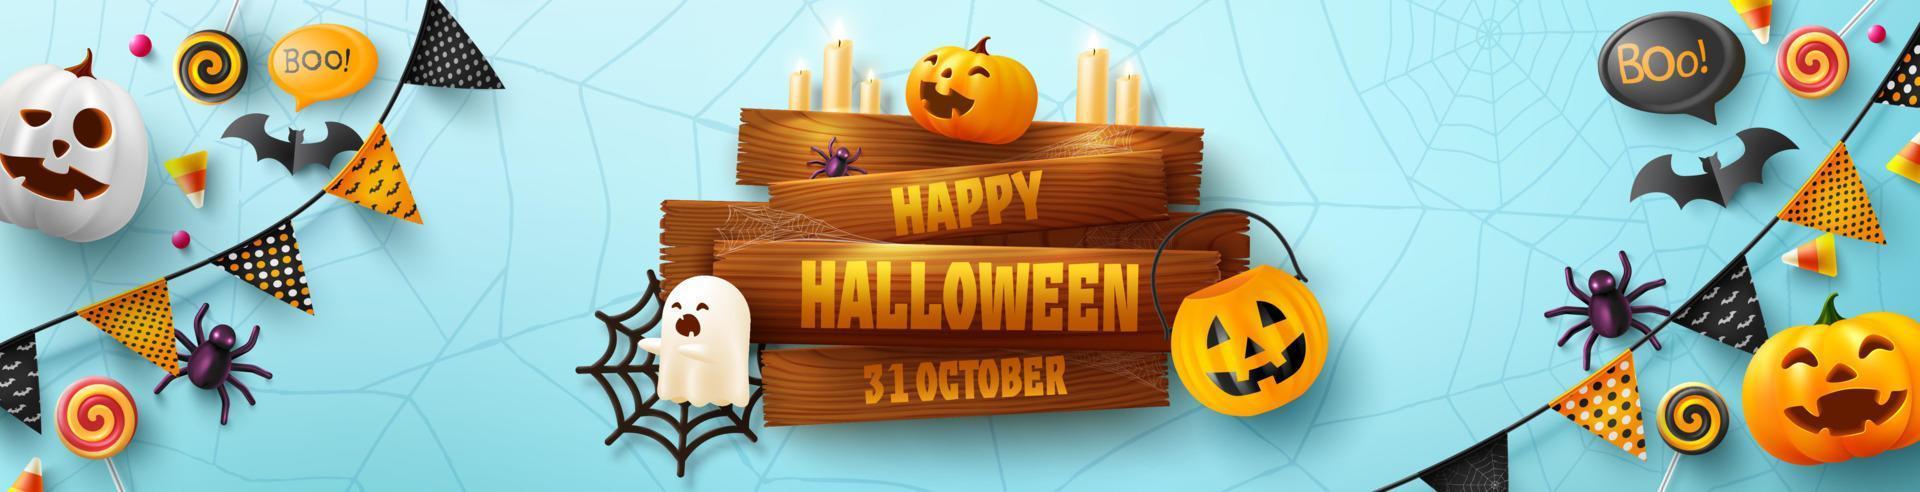 modelo de banner de halloween com placa de madeira velha, balões fantasma de halloween, balões de ar de abóbora. assustadores, morcego, doces e elementos de halloween sobre fundo azul vetor